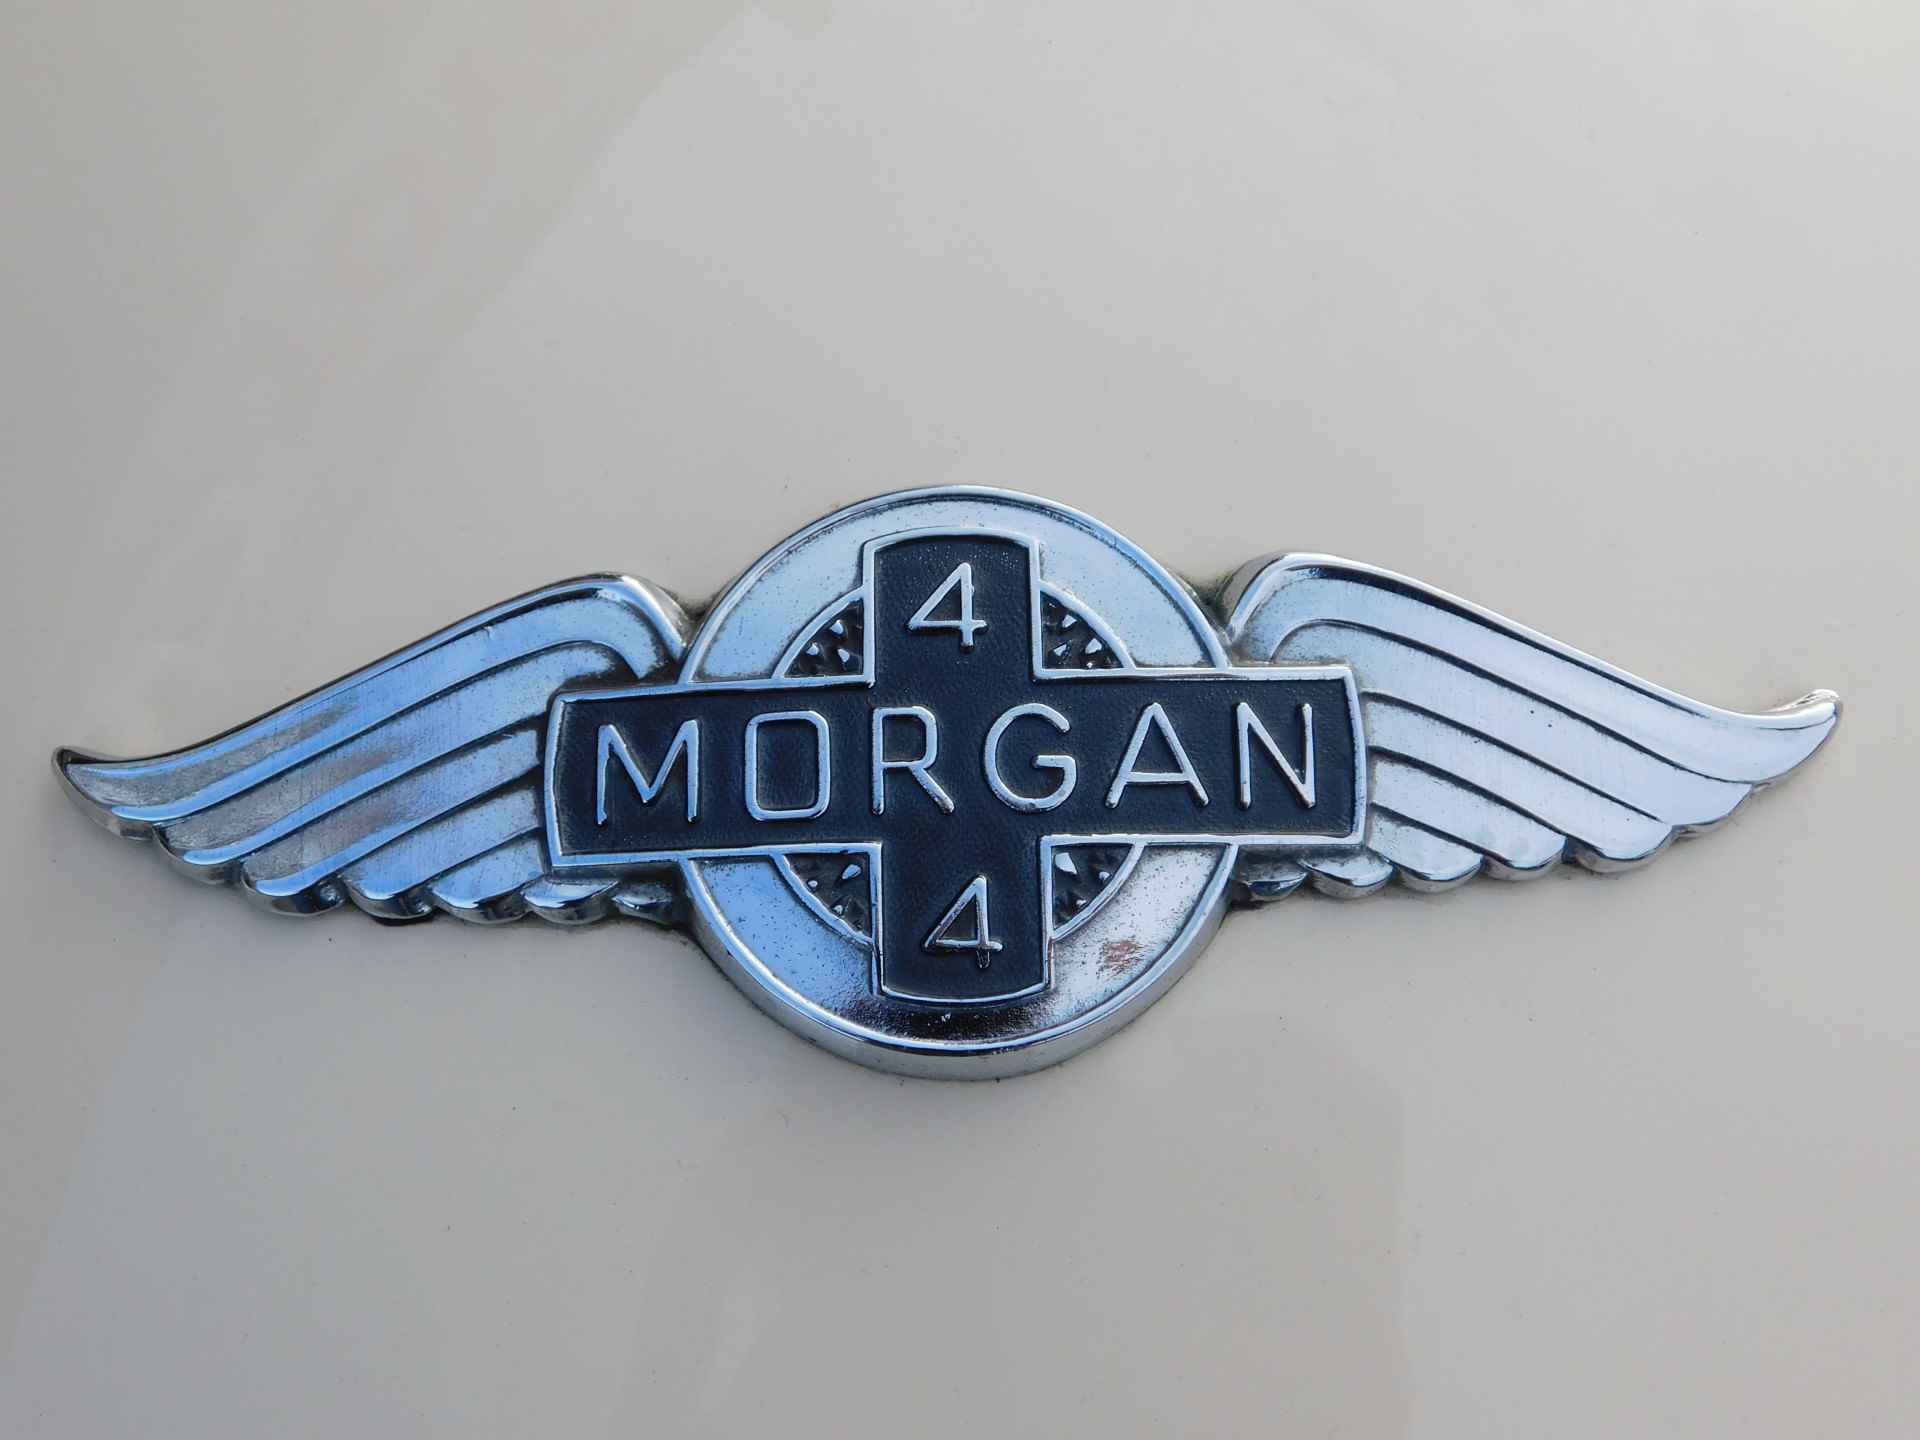 Morgan 4/4 1.6 2-seater ORGINEEL NEDERLANDSE AUTO - 2/36